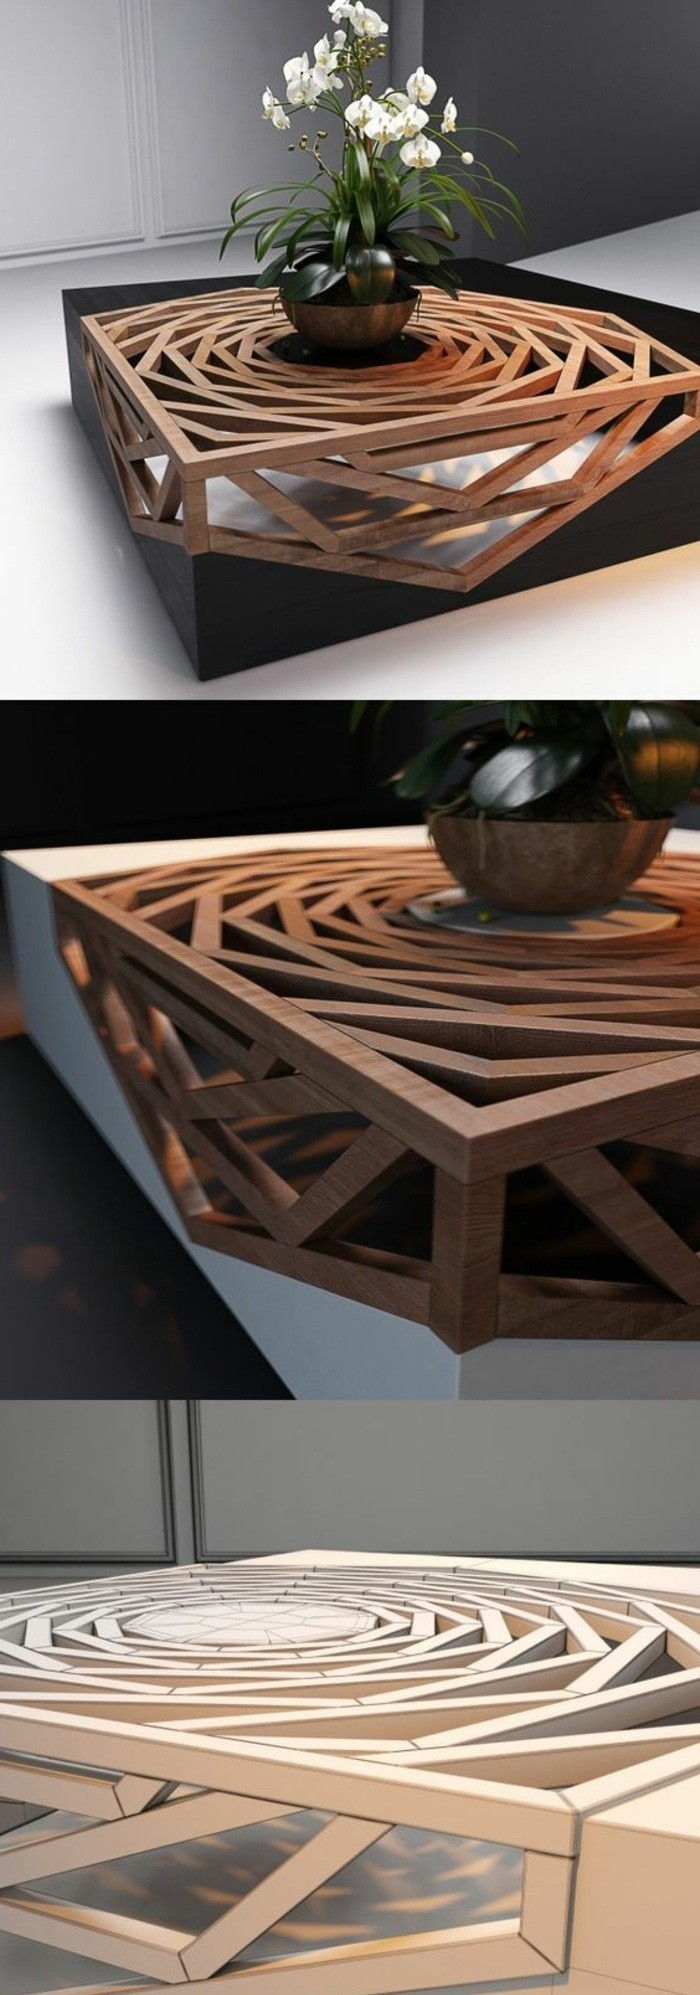 1-DIY-Moebel-wohnideen-siebie-make-table-of-drewna-waza-z-kwiatów